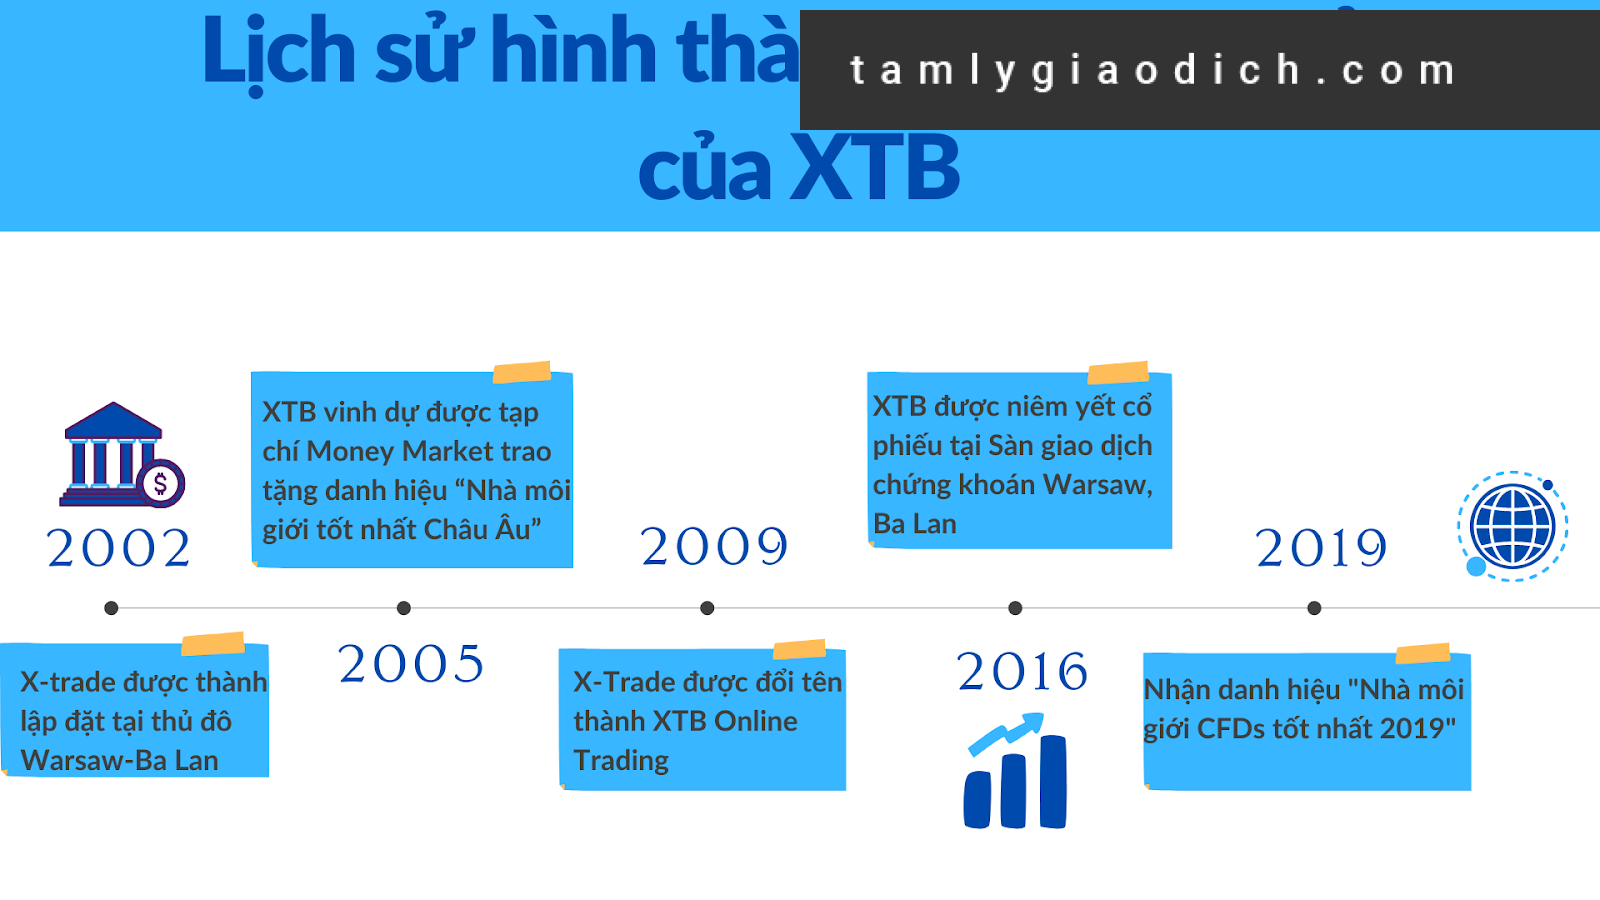 XTB phát triển lũy tiến tăng dần, bền bỉ suốt hơn 2 thập kỷ